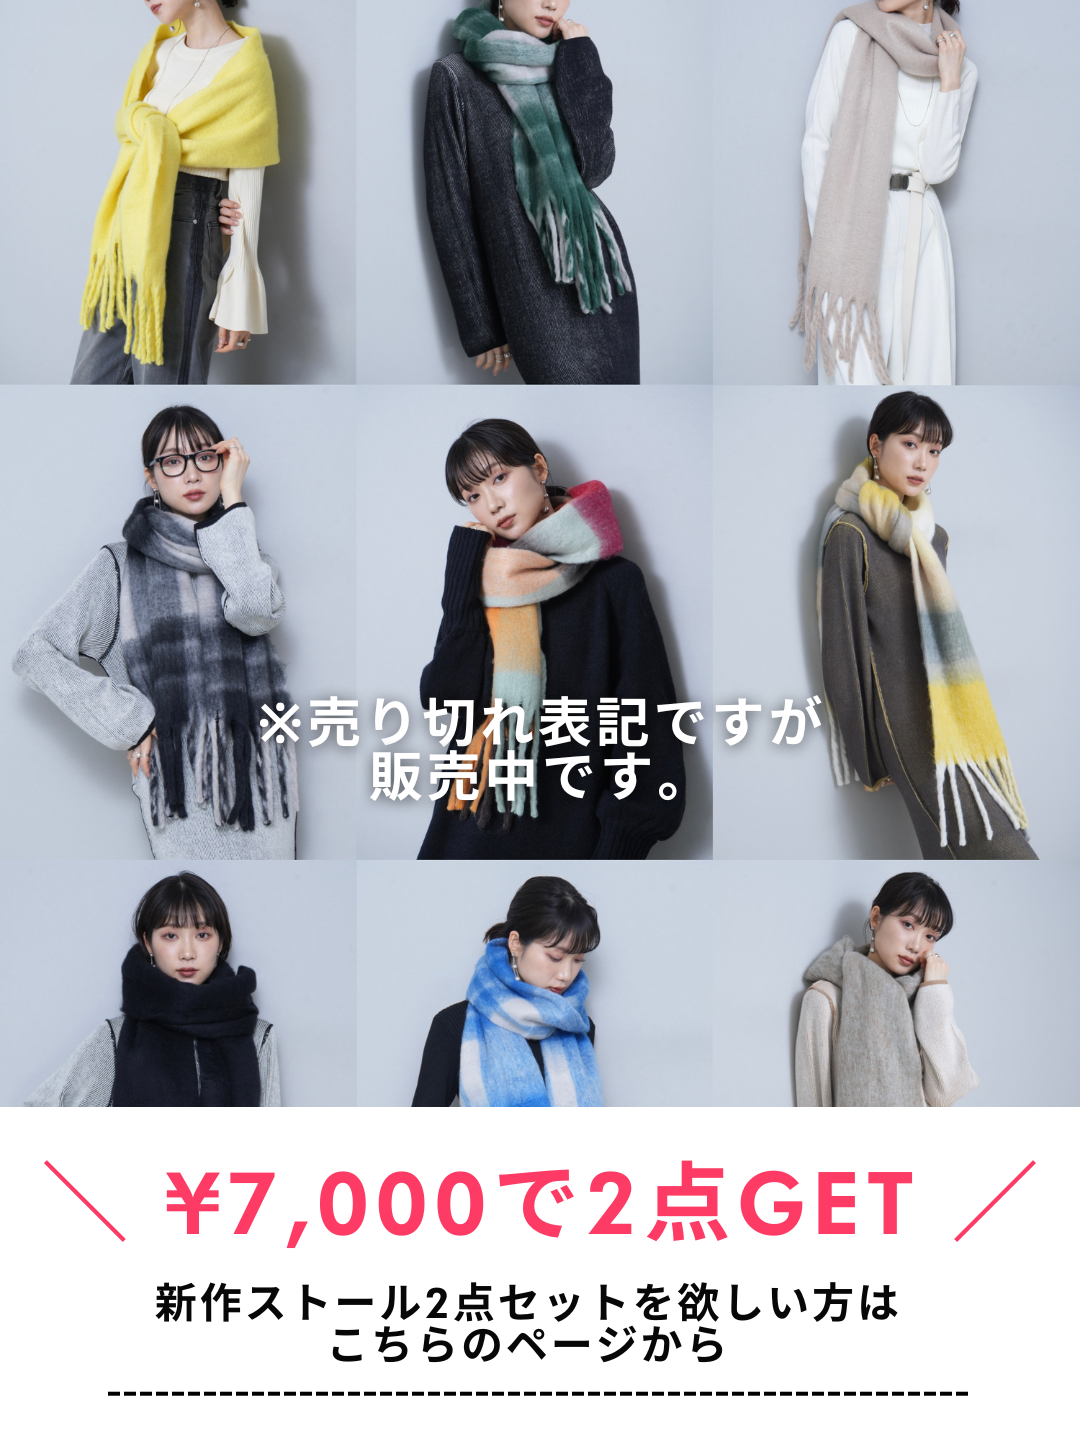 【6種24種顏色無限選擇！ 】 新款披肩 2 件組售價 7,000 日圓！